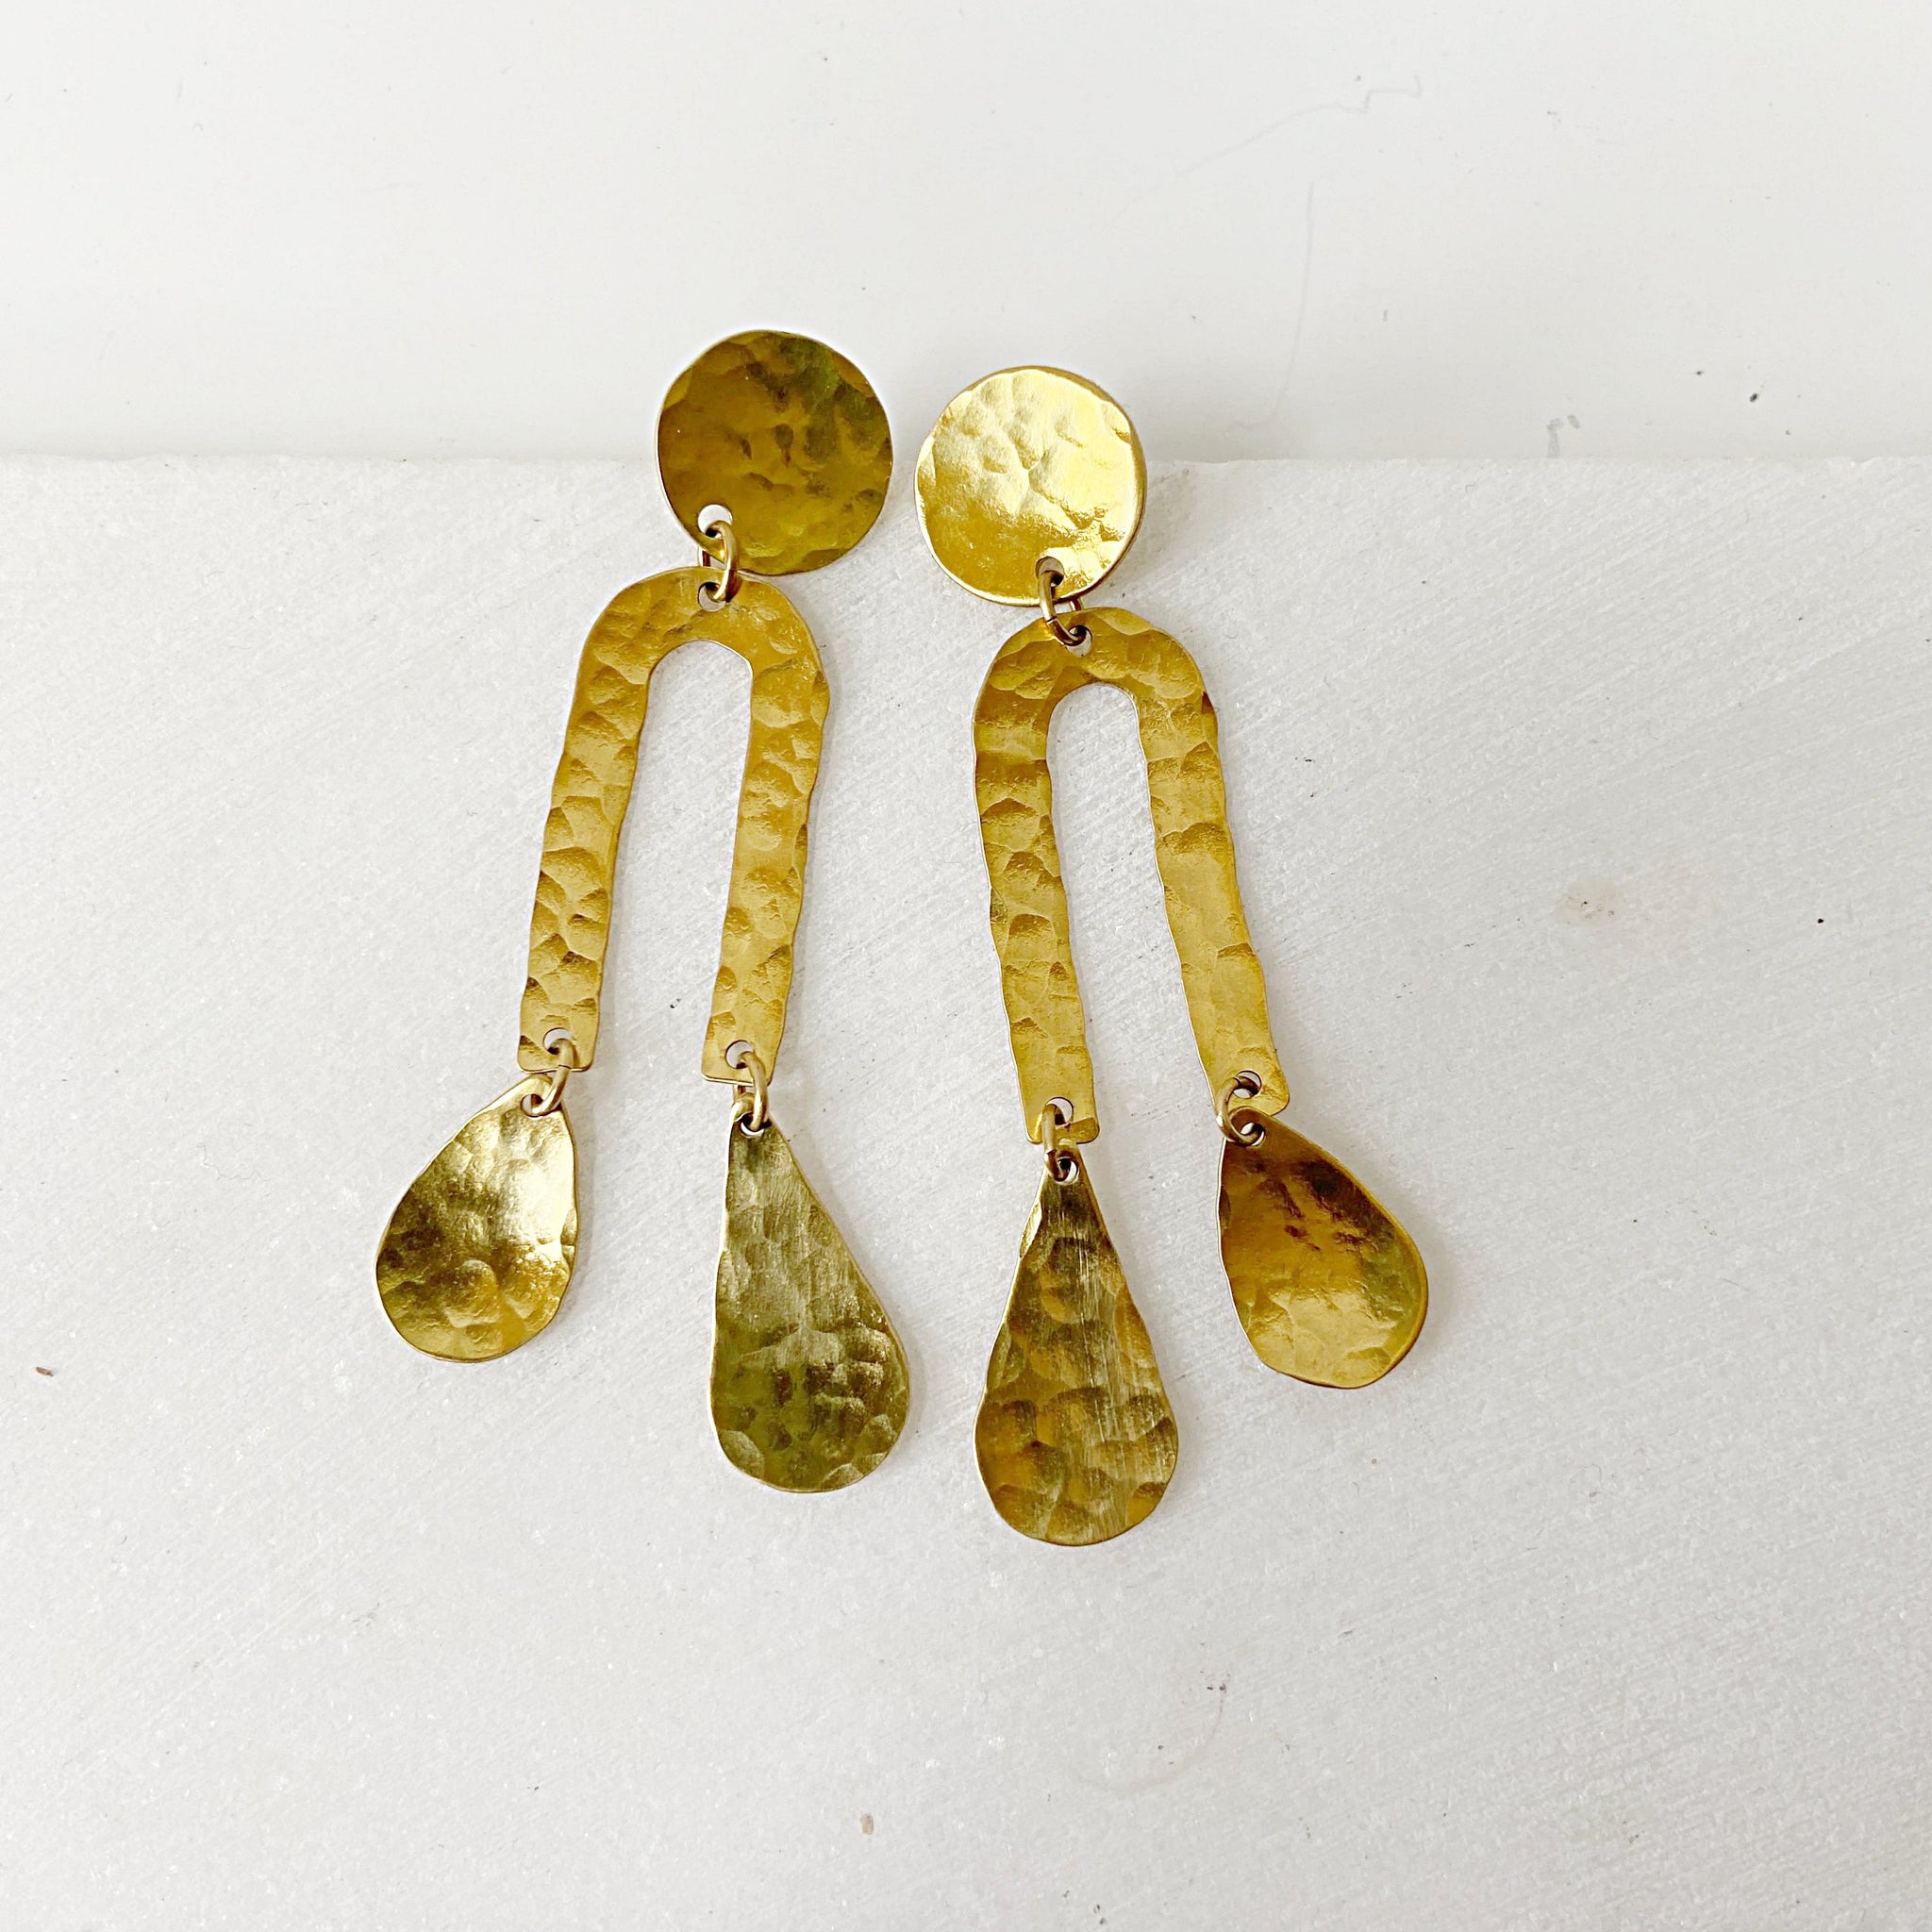 Rain Drops & Moon Earrings // Brass Geometric Earrings